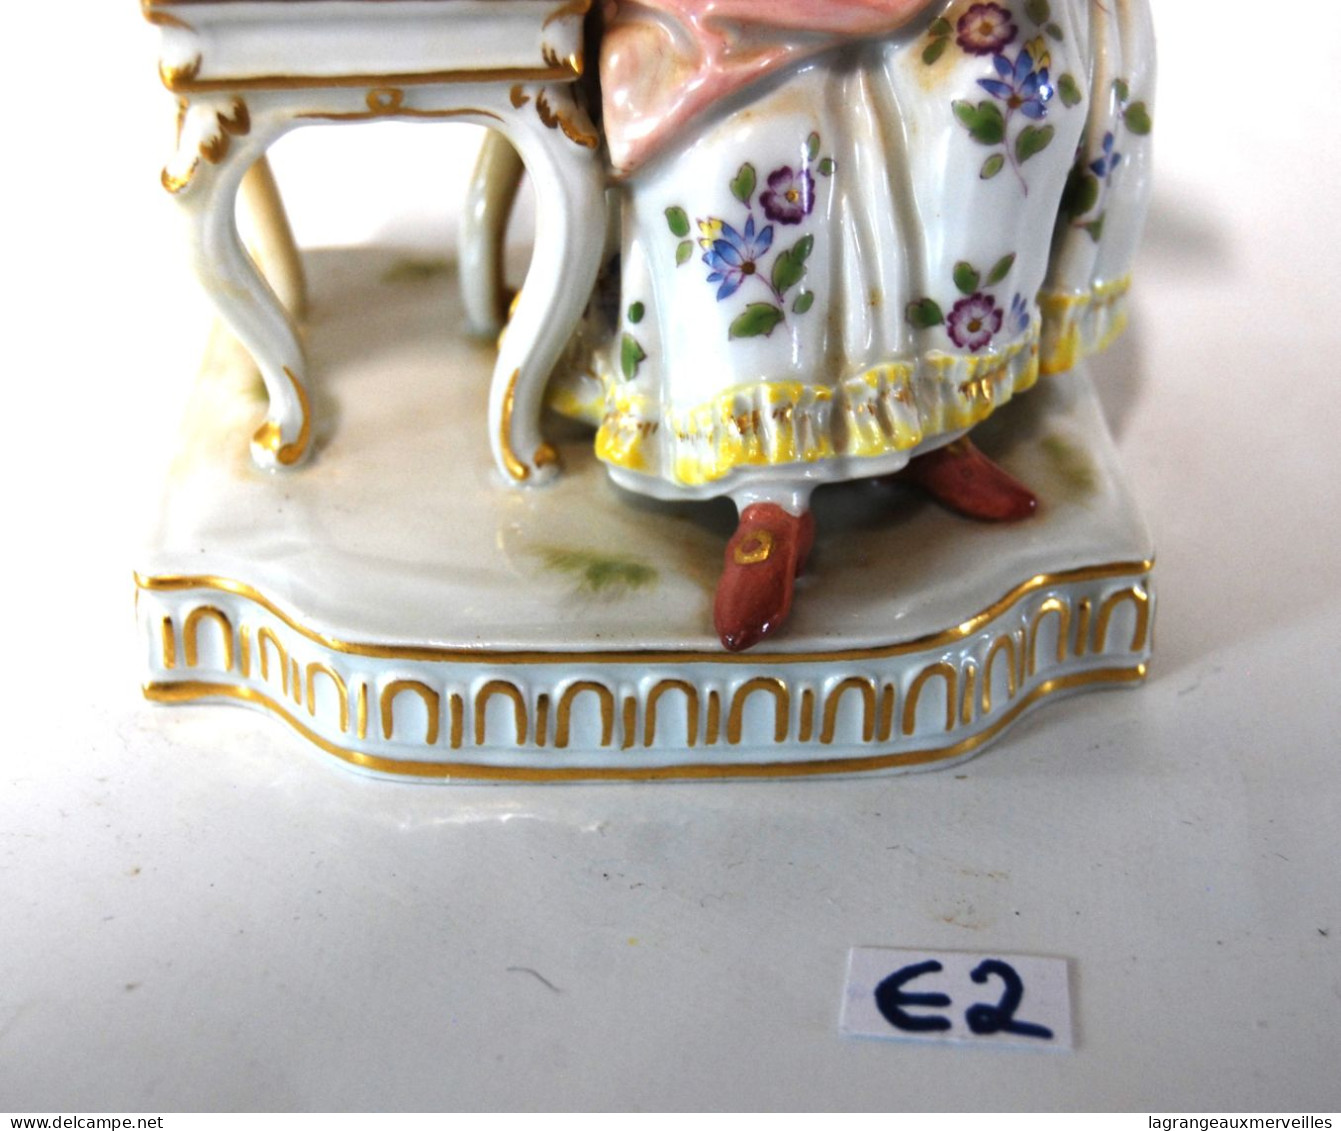 E2 Magnifique sujet en porcelaine de Meissen - Poinçon épées croisées - Femme aux fruits - Finesse du travail